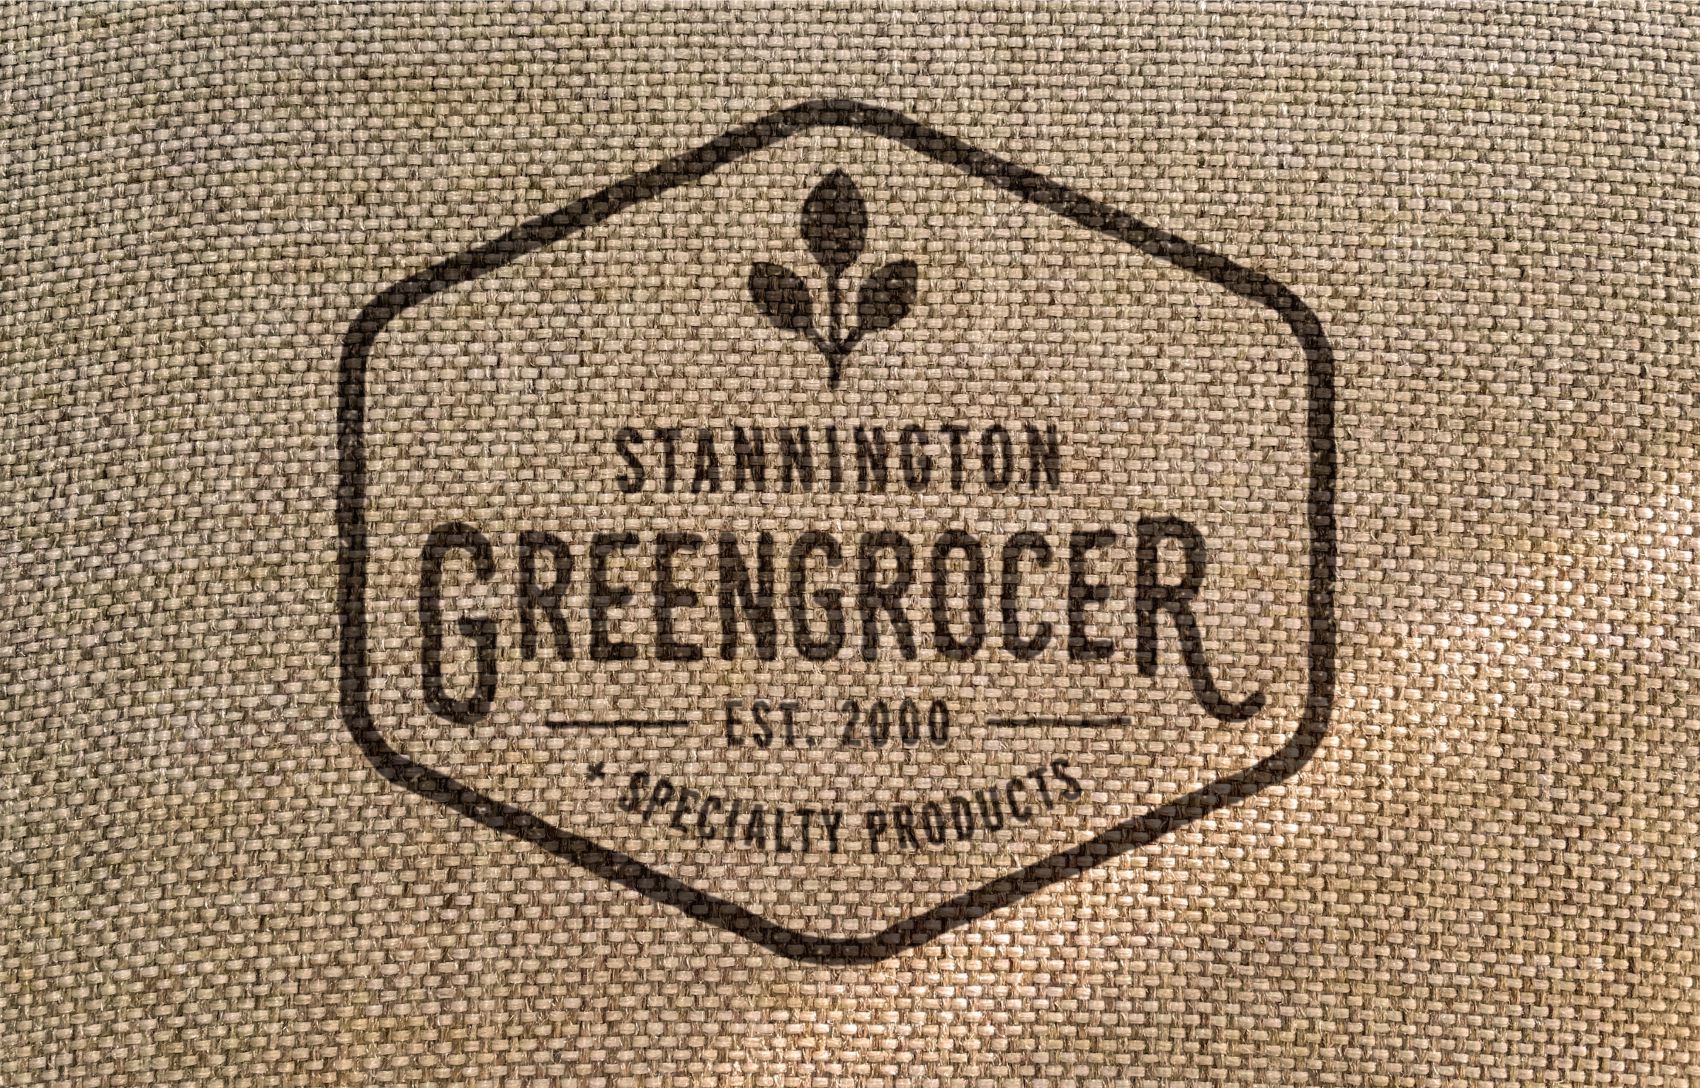 Logo-Design-Mockup-Stannington-Greengrocers